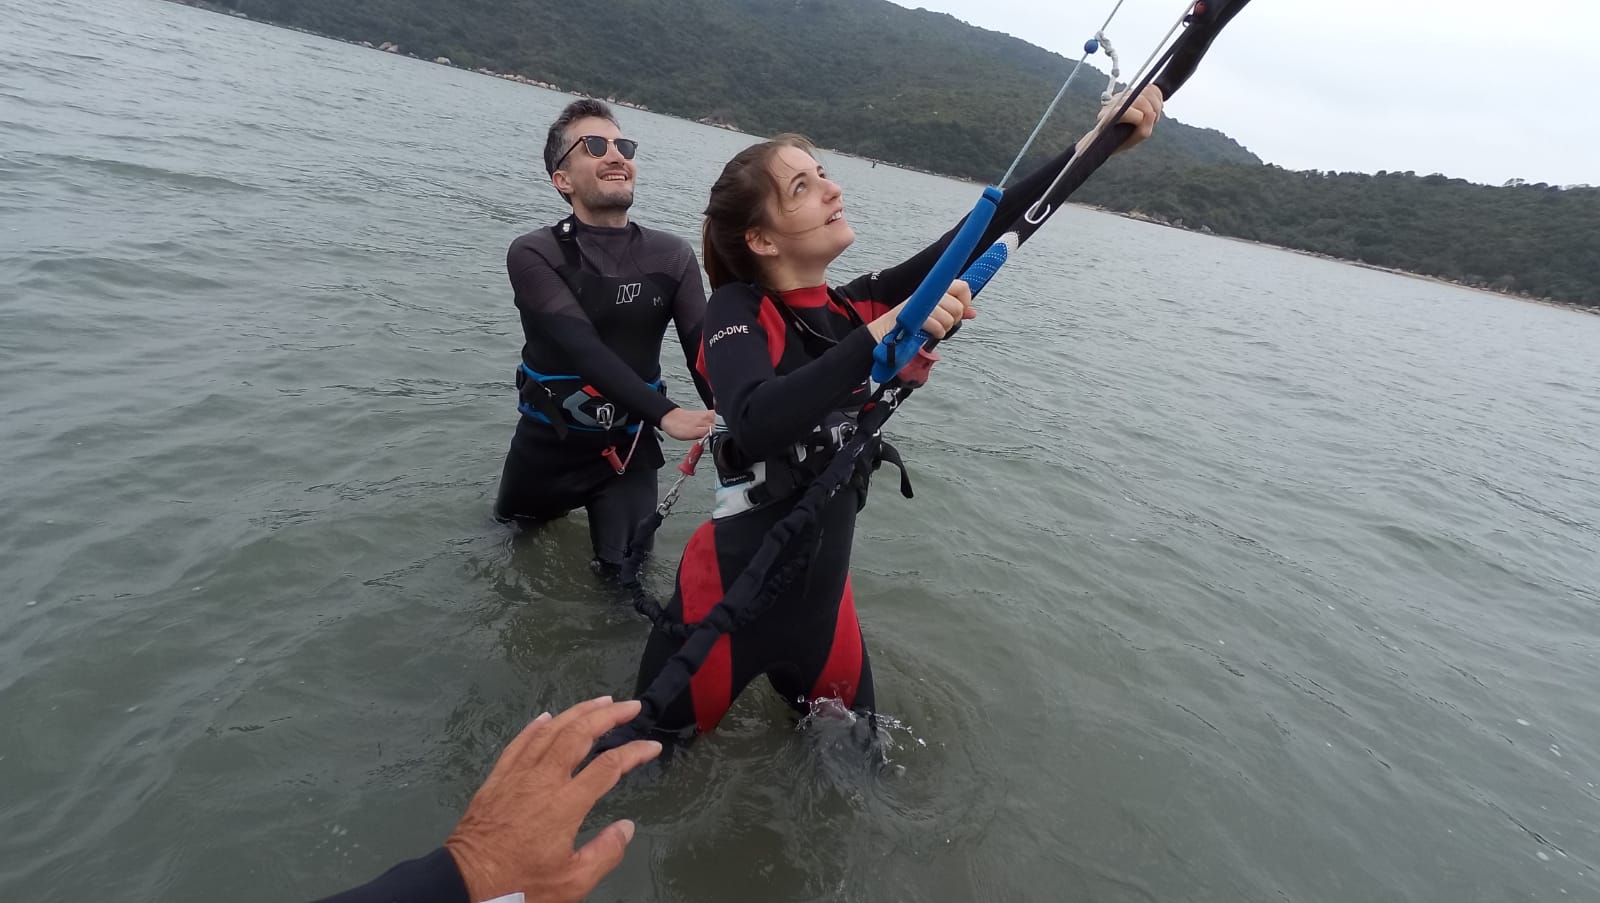 大嶼山風箏衝浪/ 風翼衝浪體驗